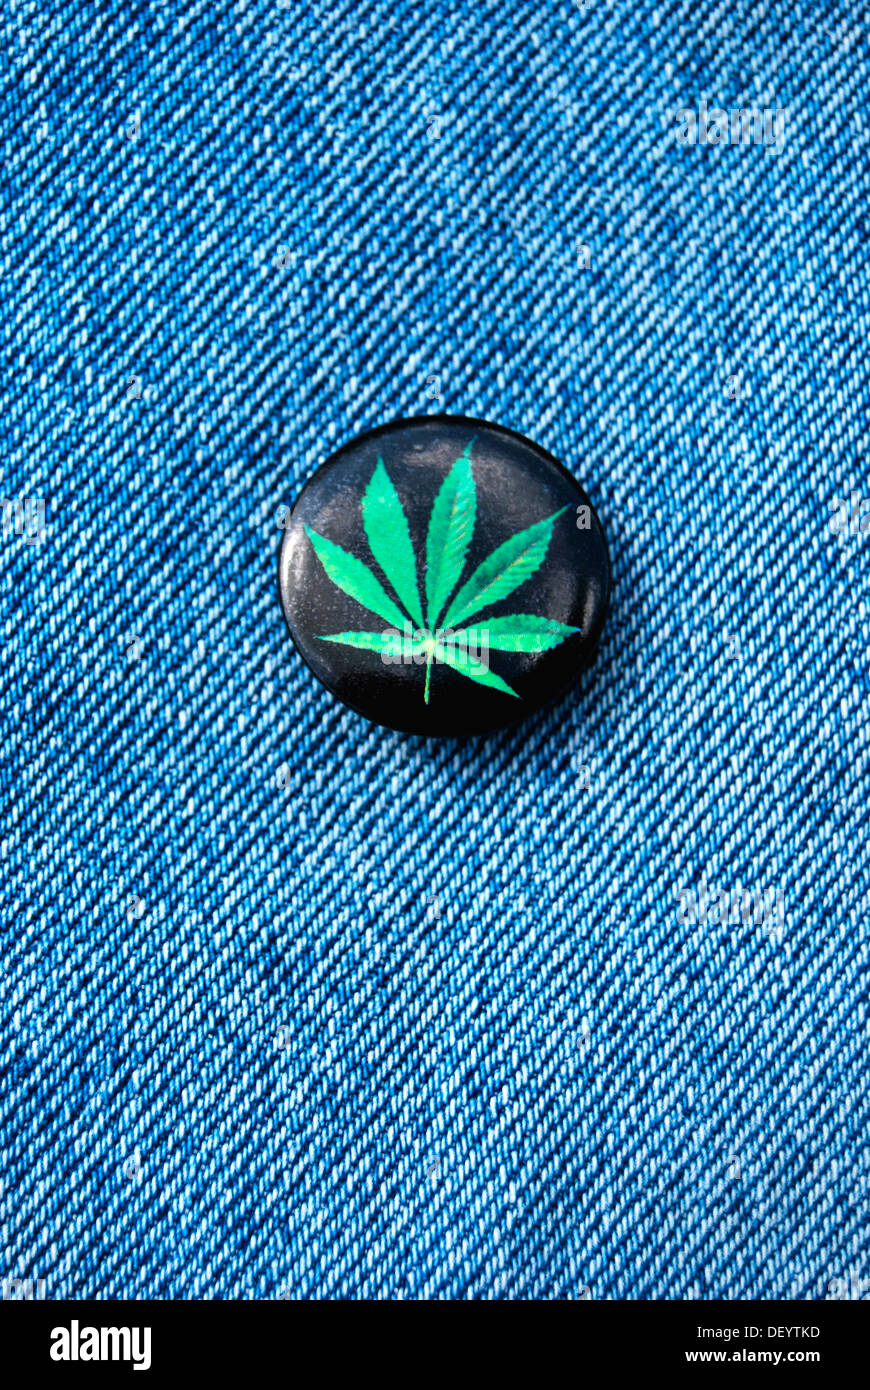 Hemp leaf, badge, denim Stock Photo